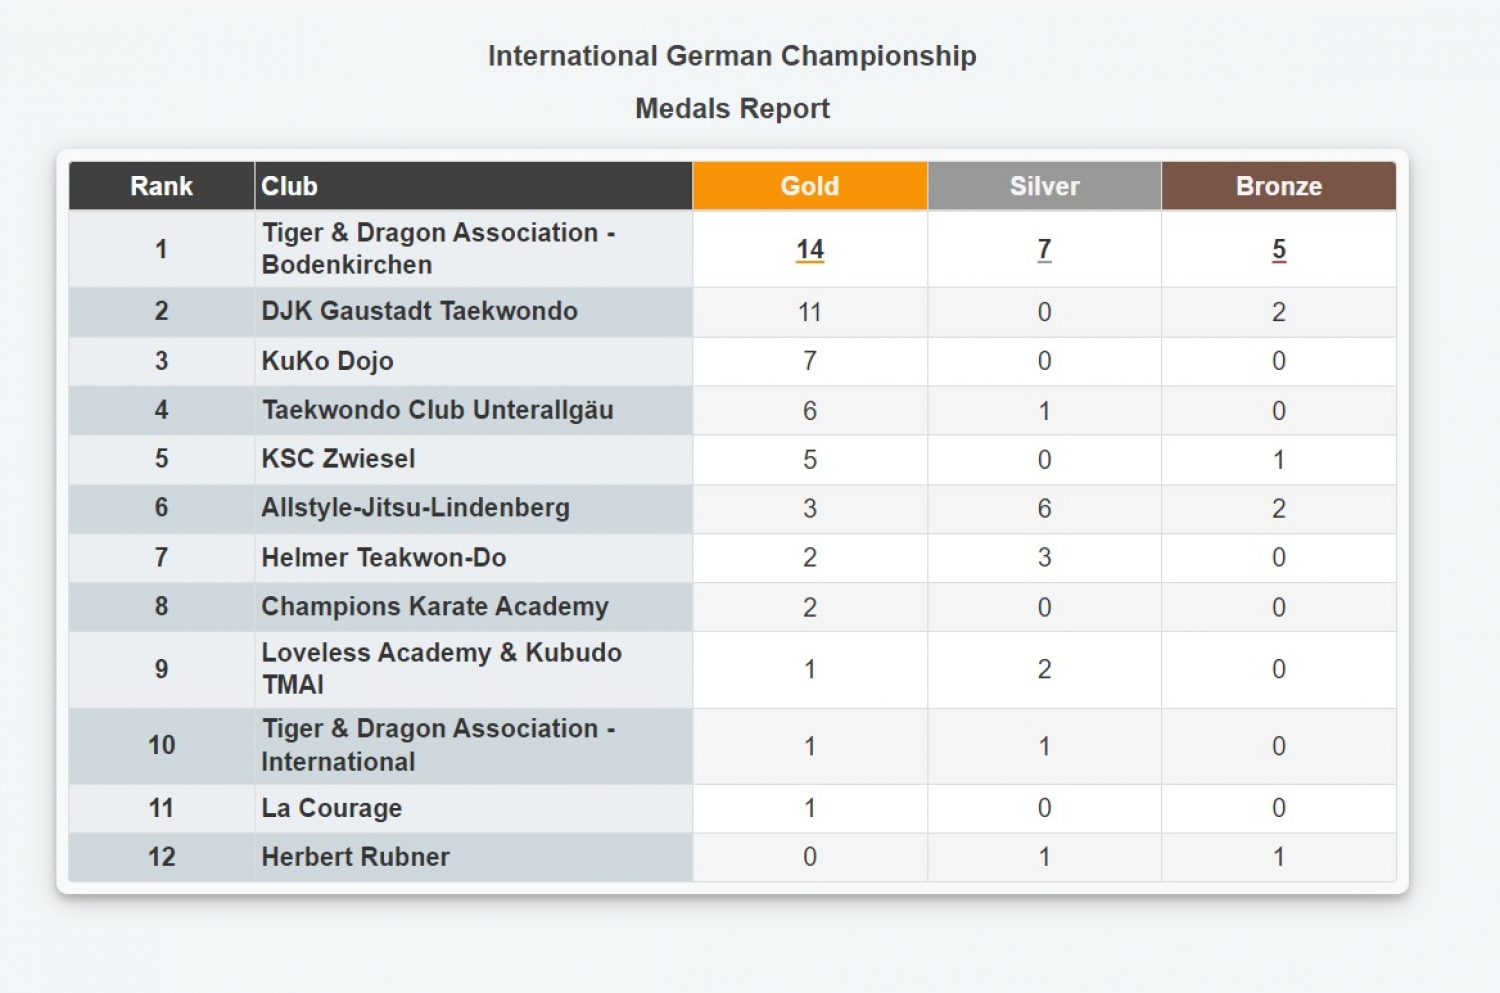 Cuadro de medallas del Campeonato Internacional de Alemania 2023